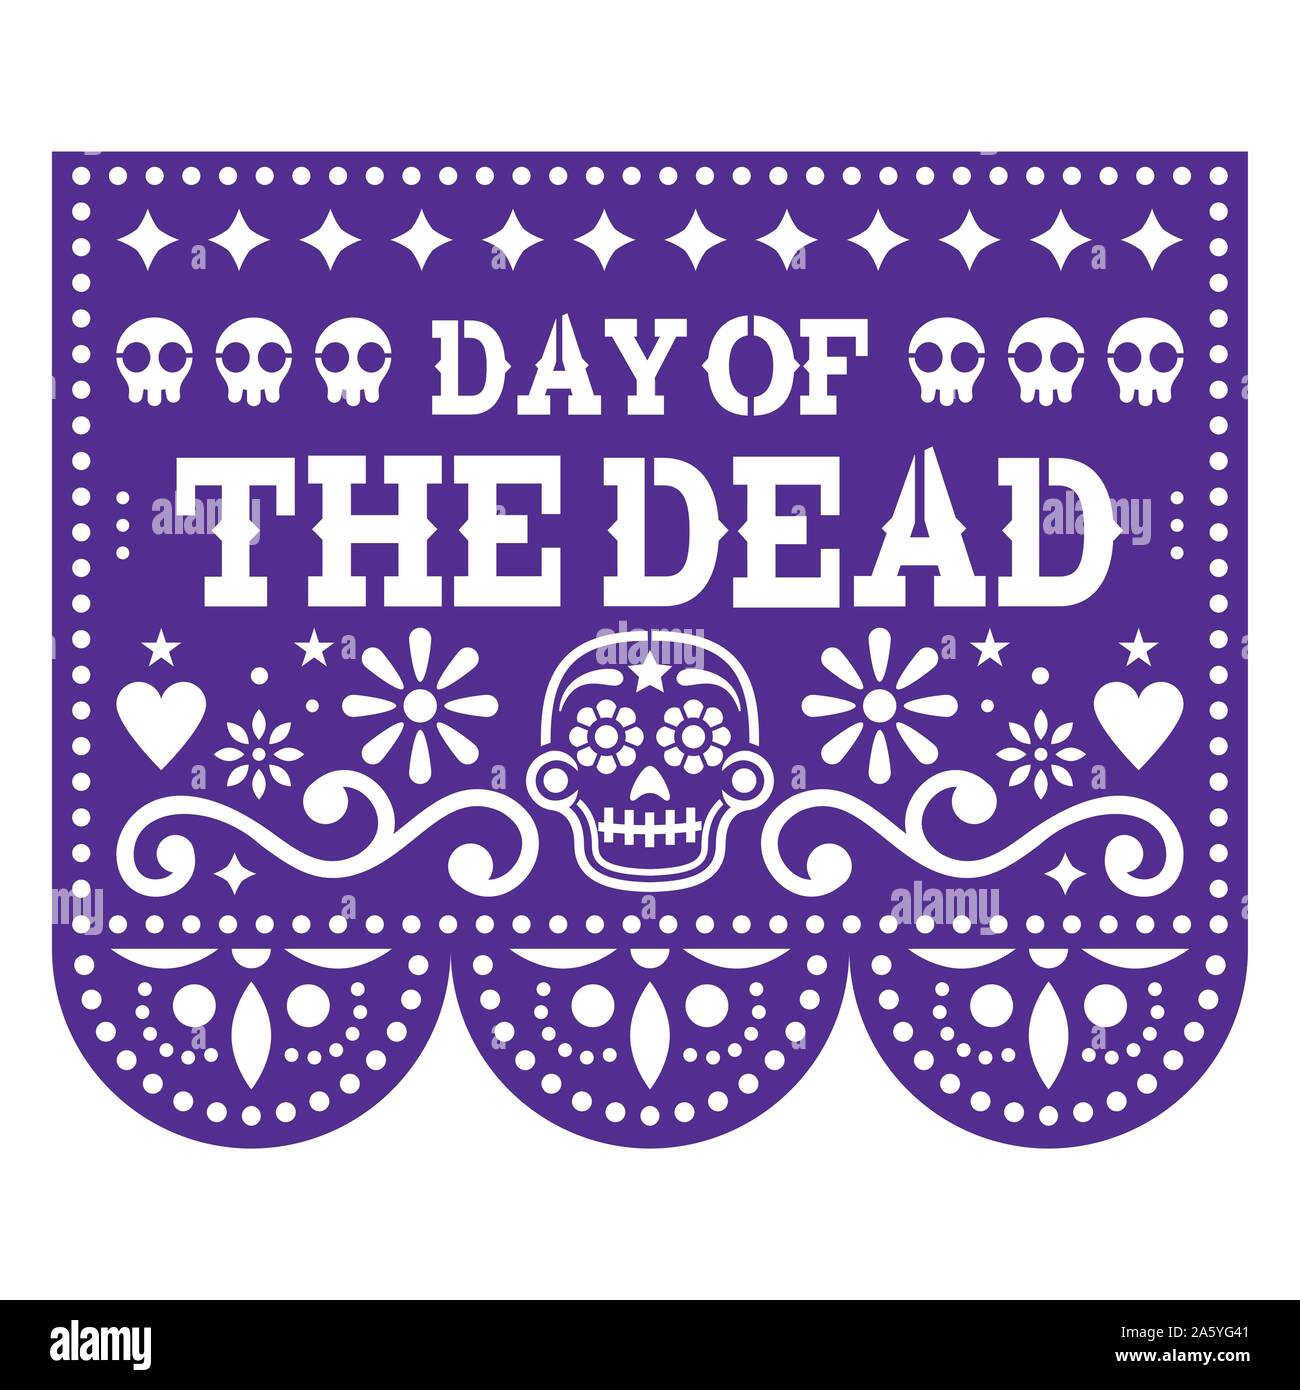 Le Jour des Morts papel picado design avec des crânes de sucre mexicain, découper le papier de fond de fleurs et guirlande de crânes Illustration de Vecteur